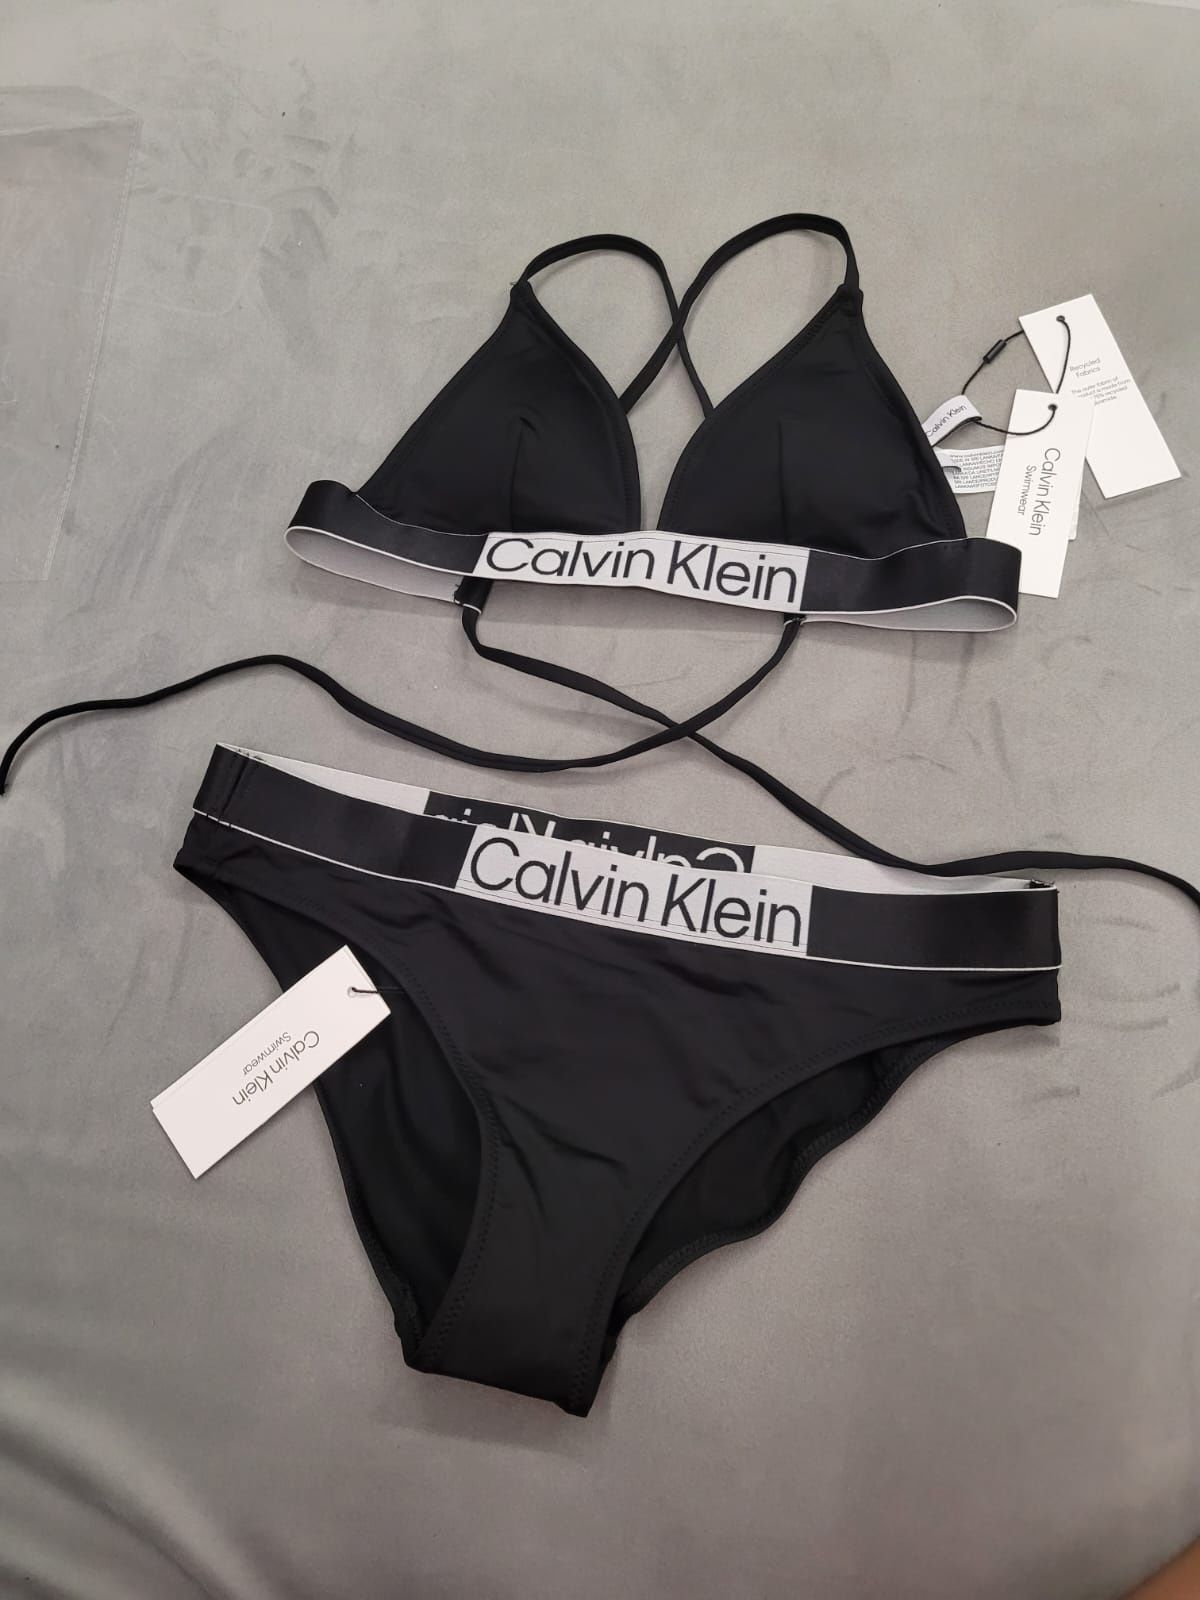 Nowy oryginalny dwuczęściowy strój kąpielowy Calvin Klein